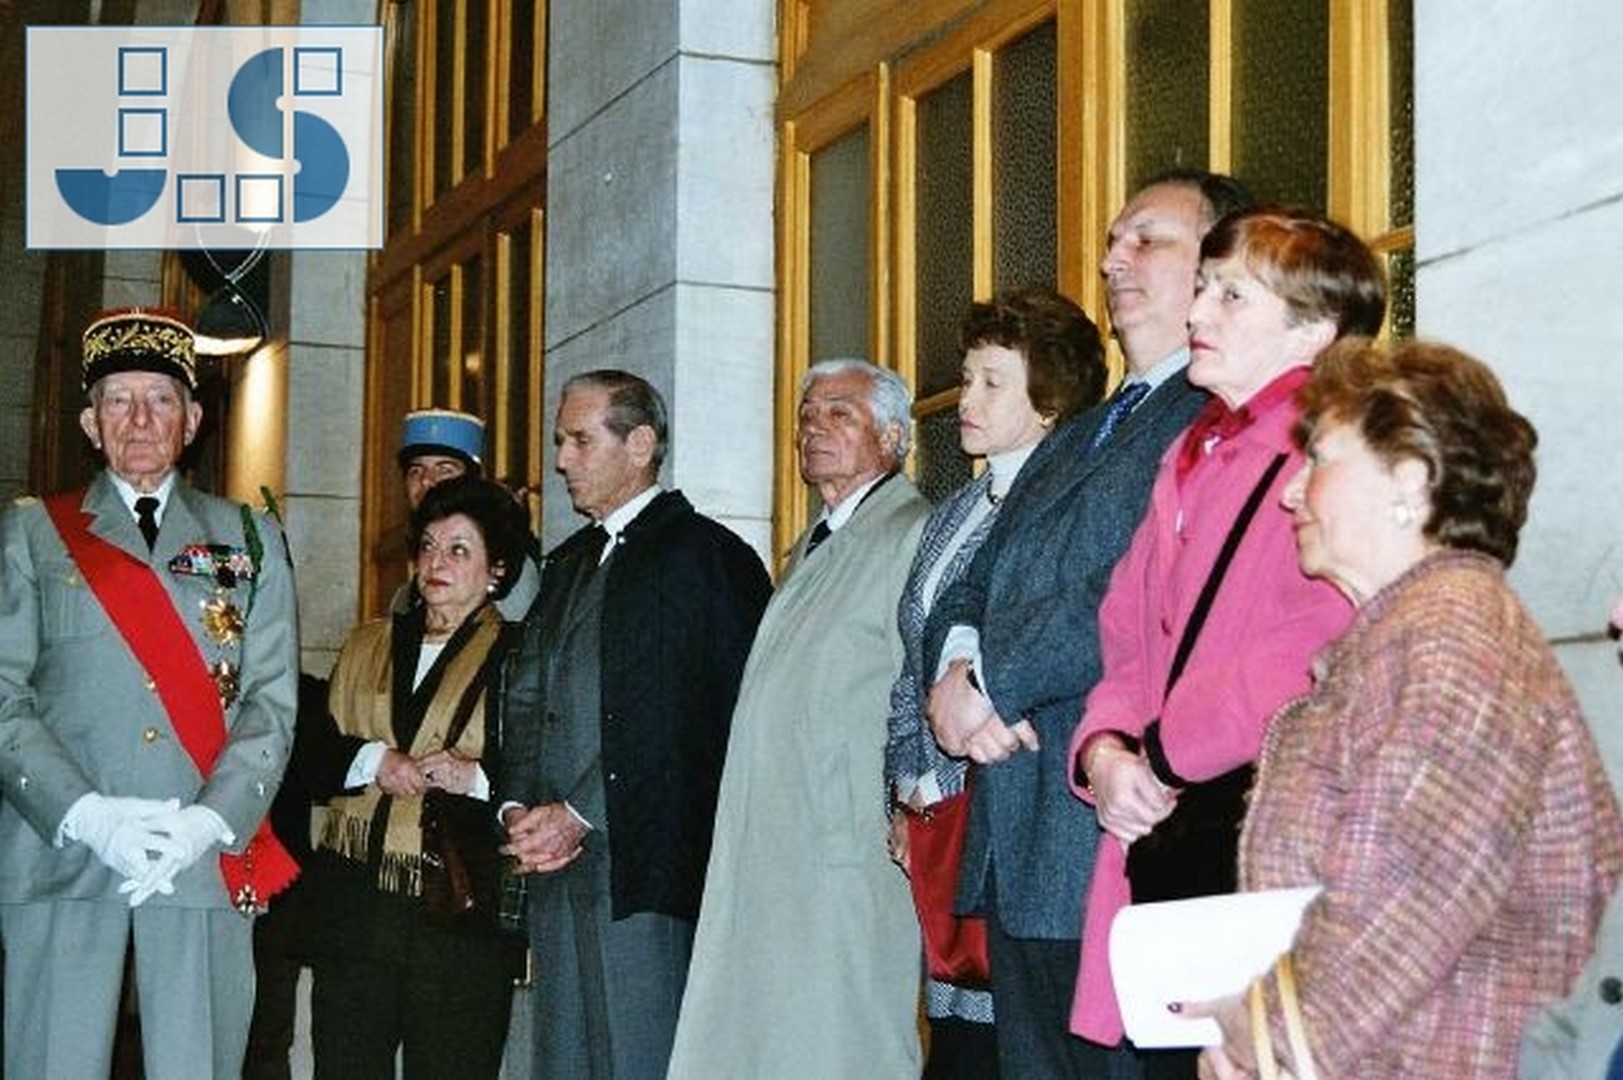 De gauche à droite : Mme Anne Brossolette da Silva Branco, M. Claude Pierre-Brossolette, M. Colin du Bocage (président des anciens du 2e Choc), Mme Pierre-Brossolette, M. Payen (proviseur adjoint), Mme Cluzel, Mme Dora (présidente de Ciné-Histoire)